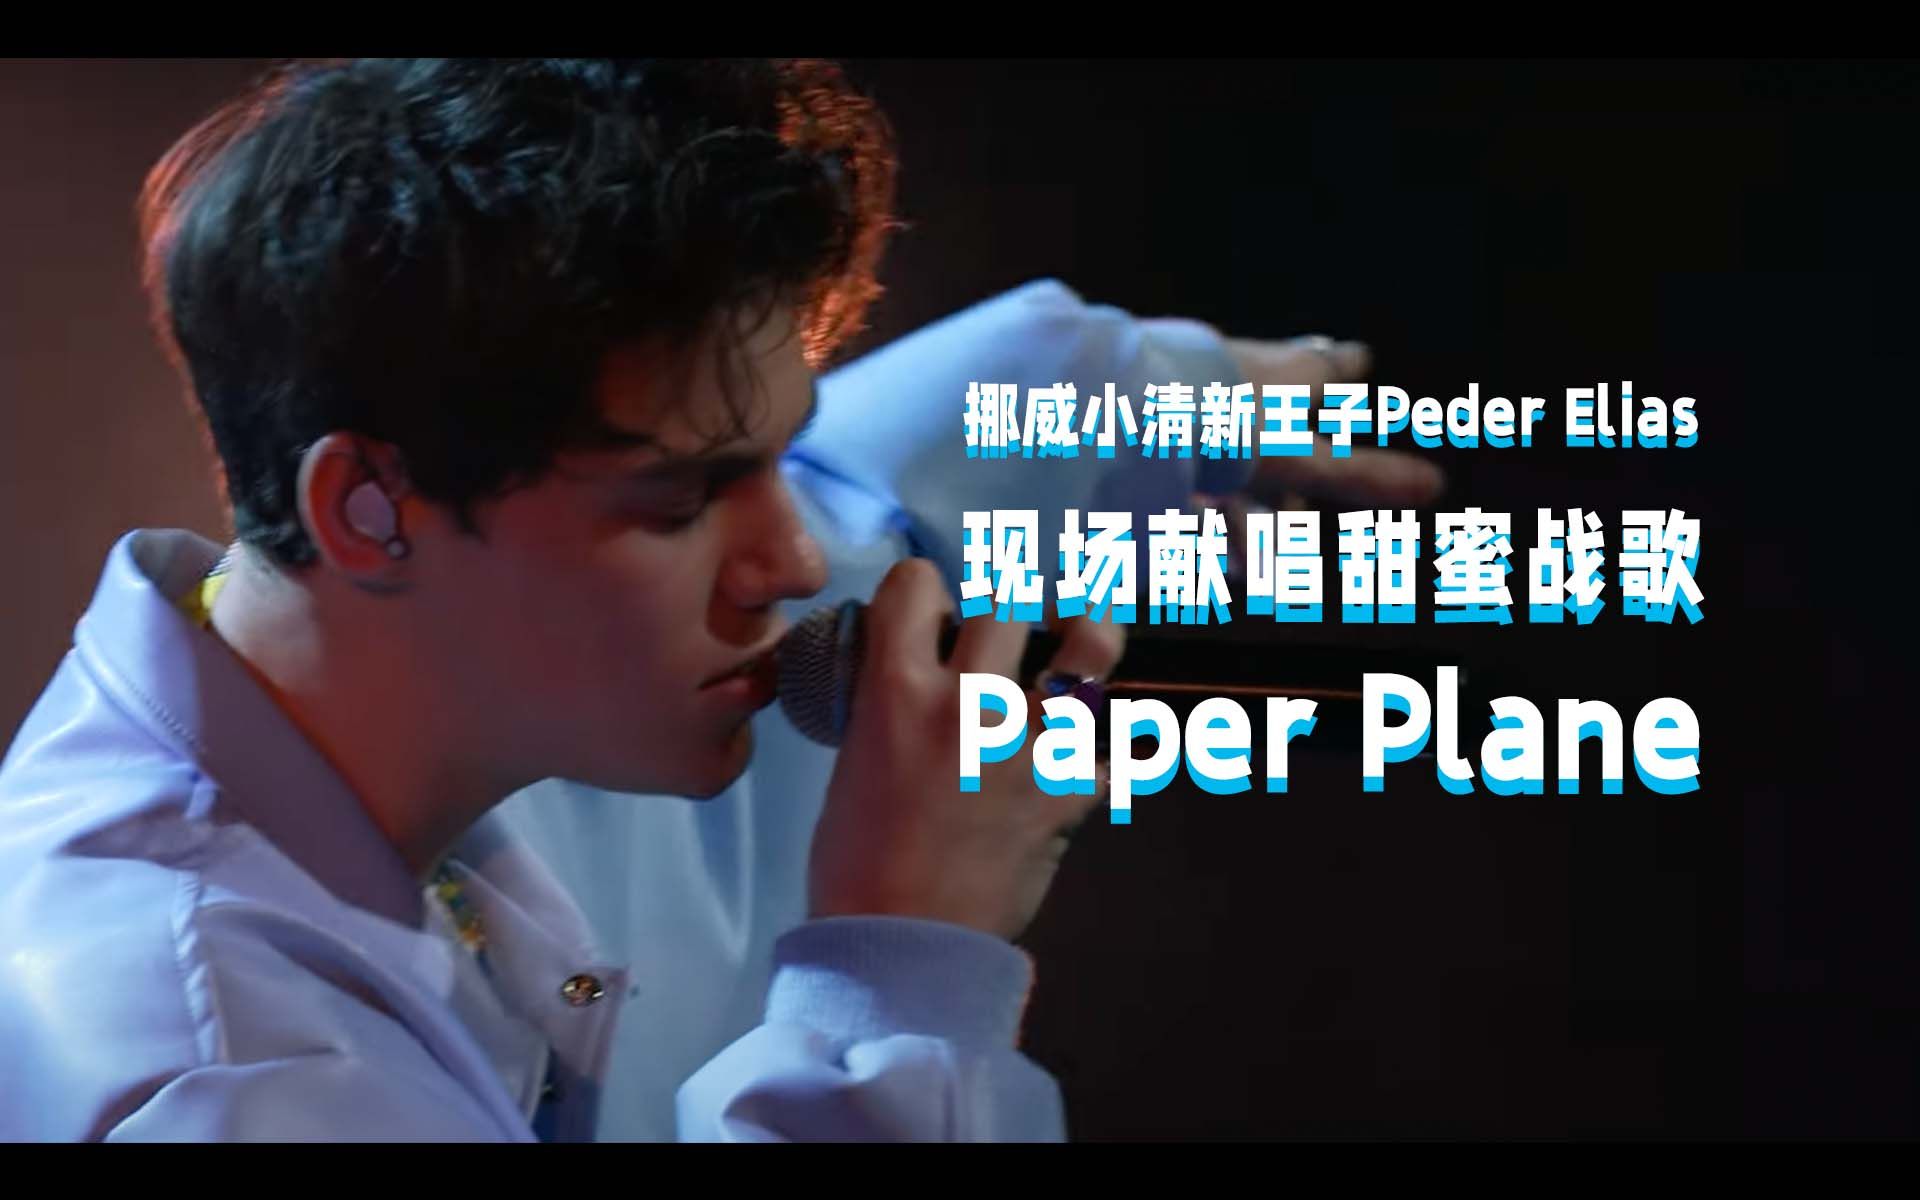 【中字现场】Peder Elias现场献唱甜蜜战歌《Paper Plane》